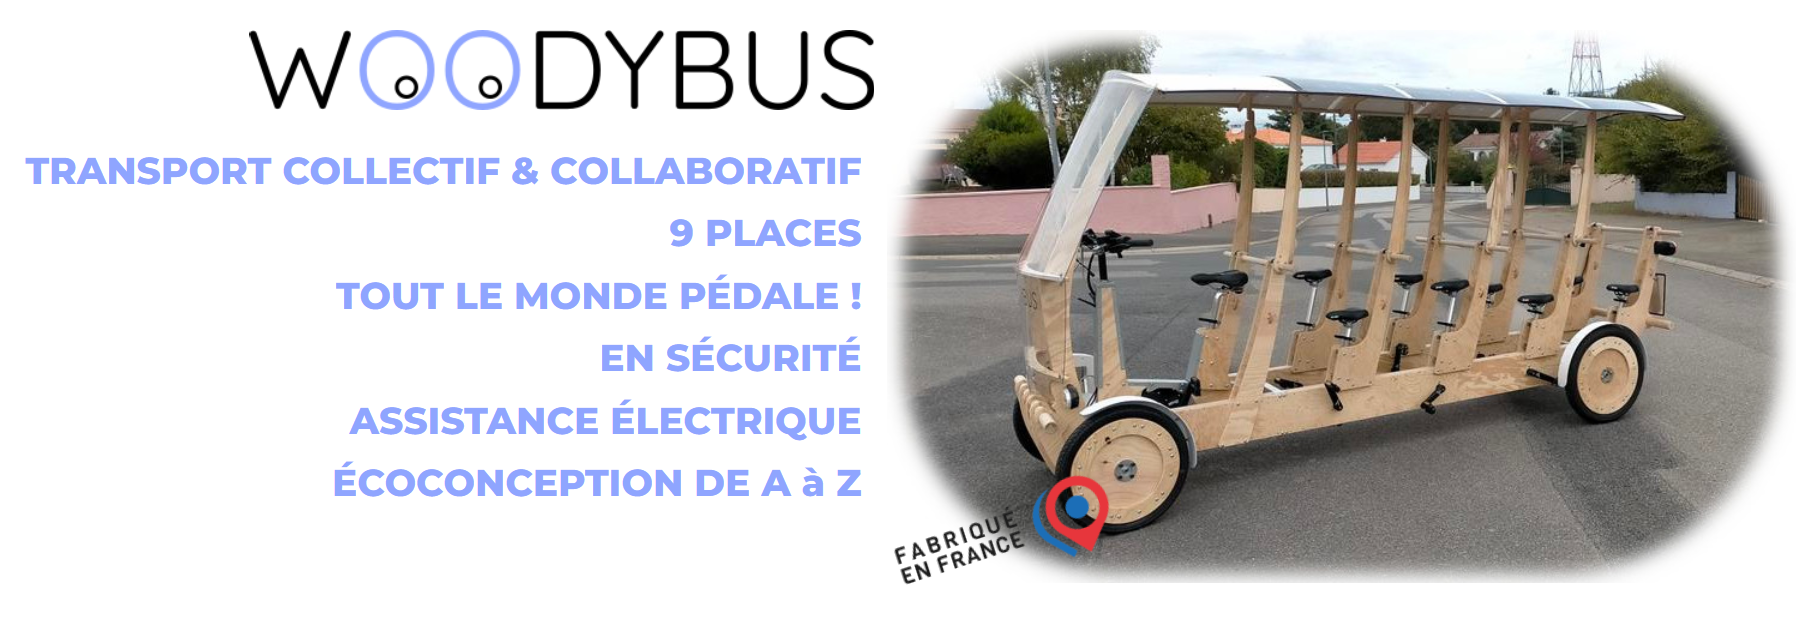 S'Cool Bus : Un transport scolaire innovant et écologique en Normandie